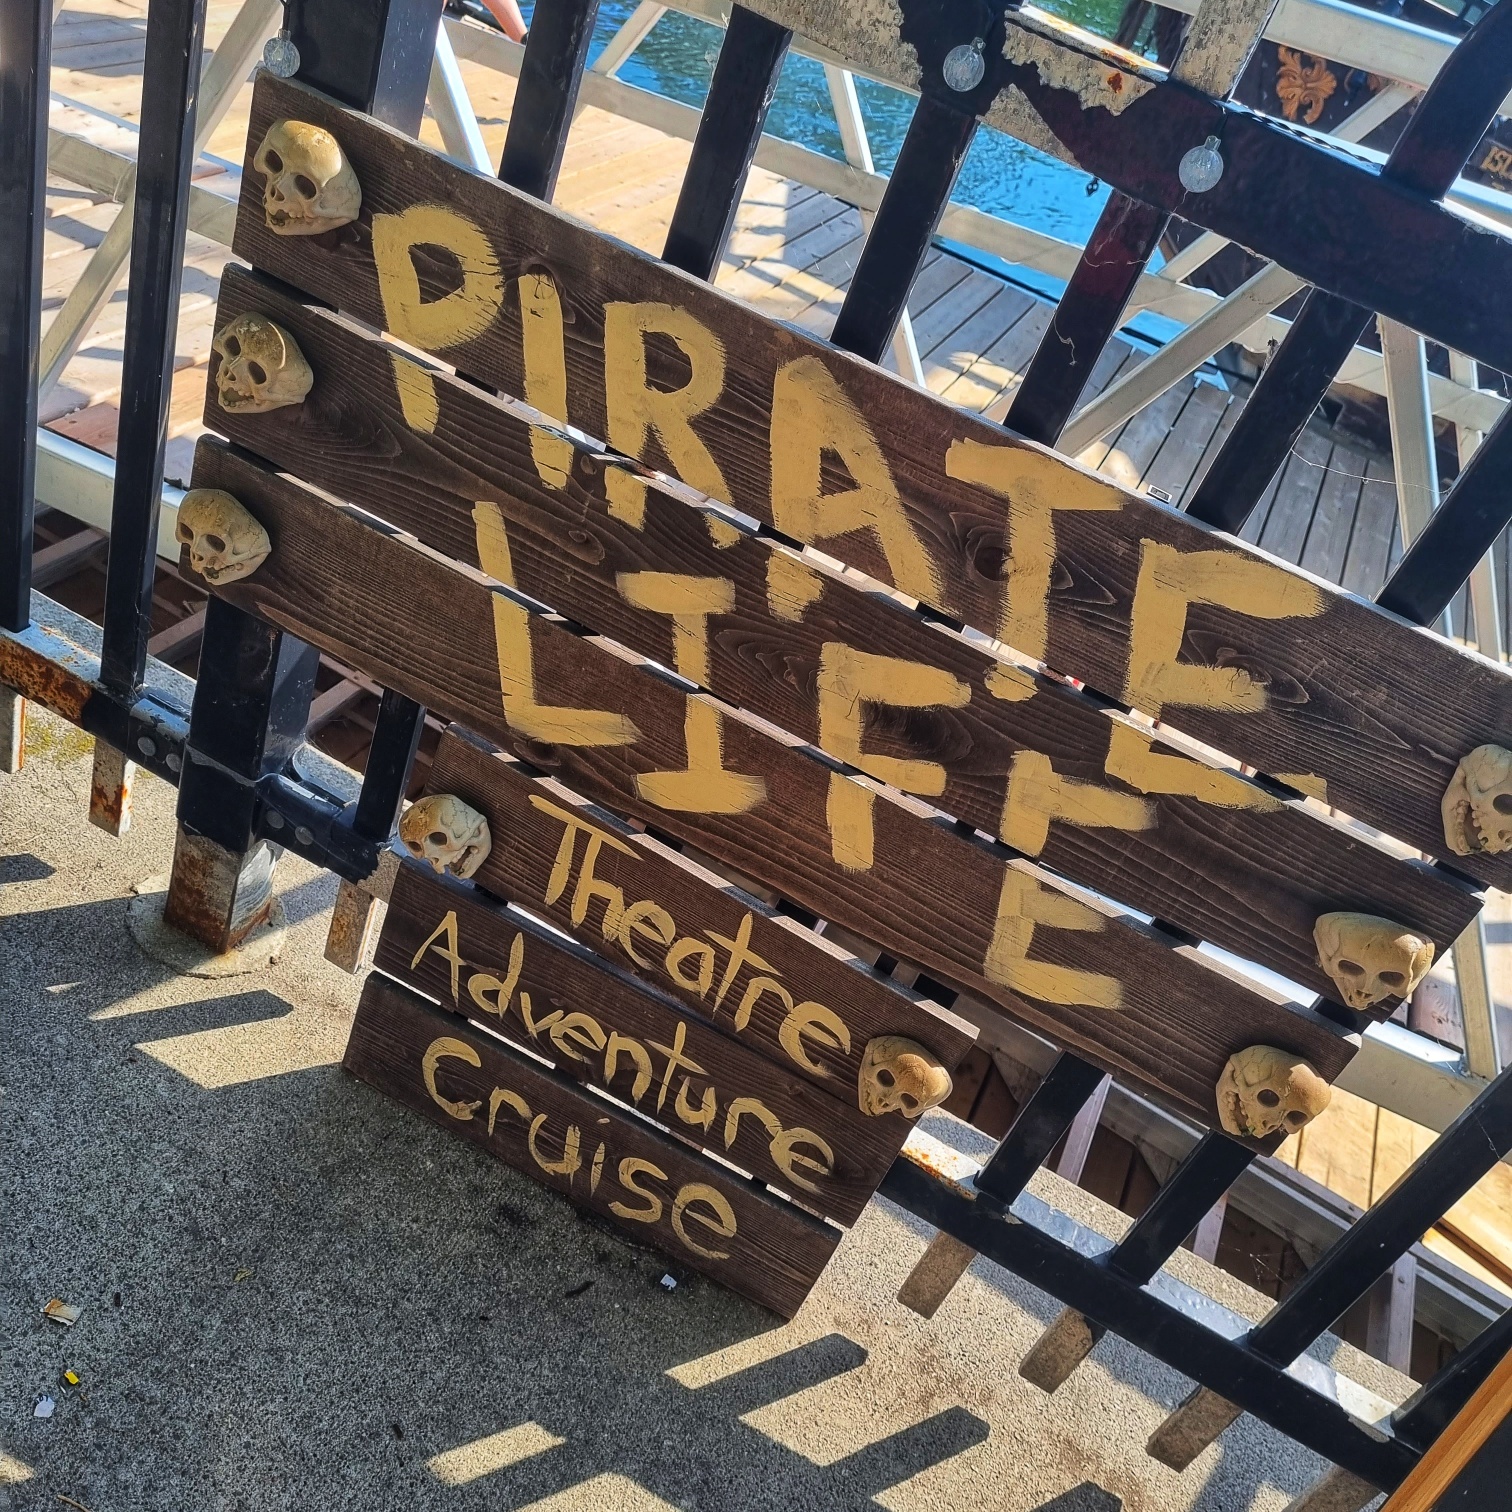 Pirate Life Theatre